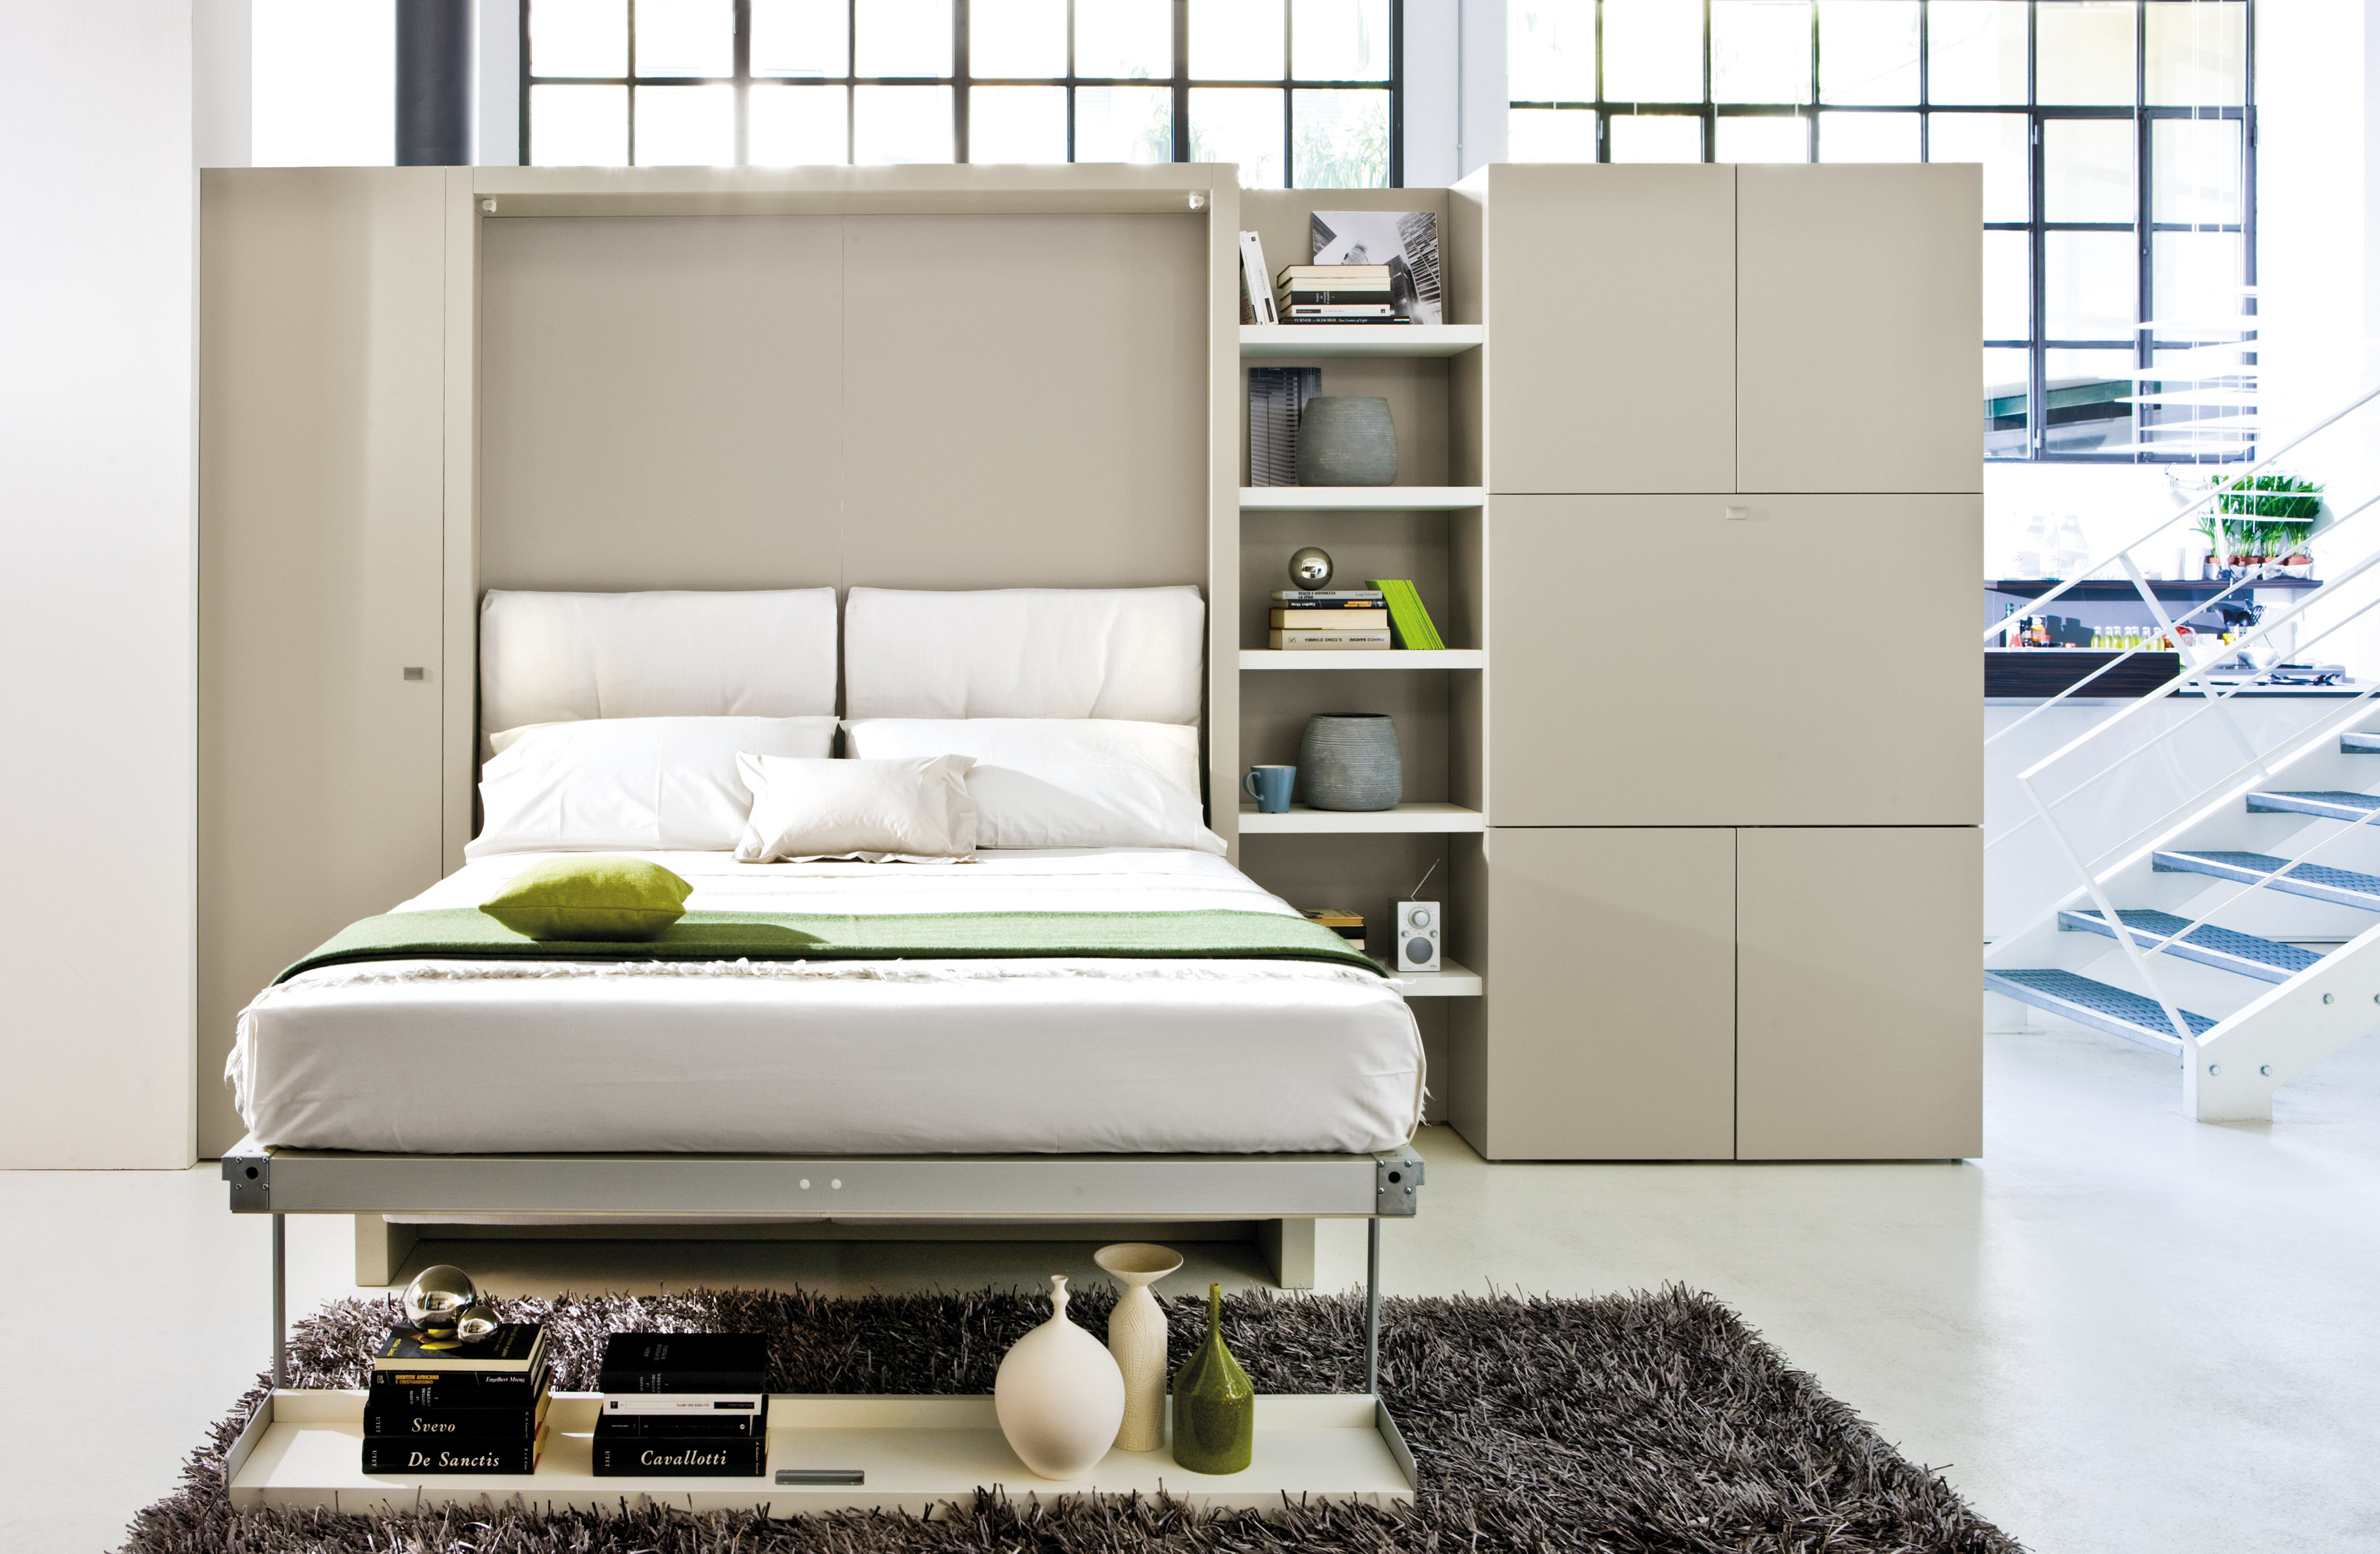 Кровать шкаф икеа цена: Купить УТОКЕР Штабелируемые кровати, сосна, 80x200 см по выгодной цене в интернет-магазине